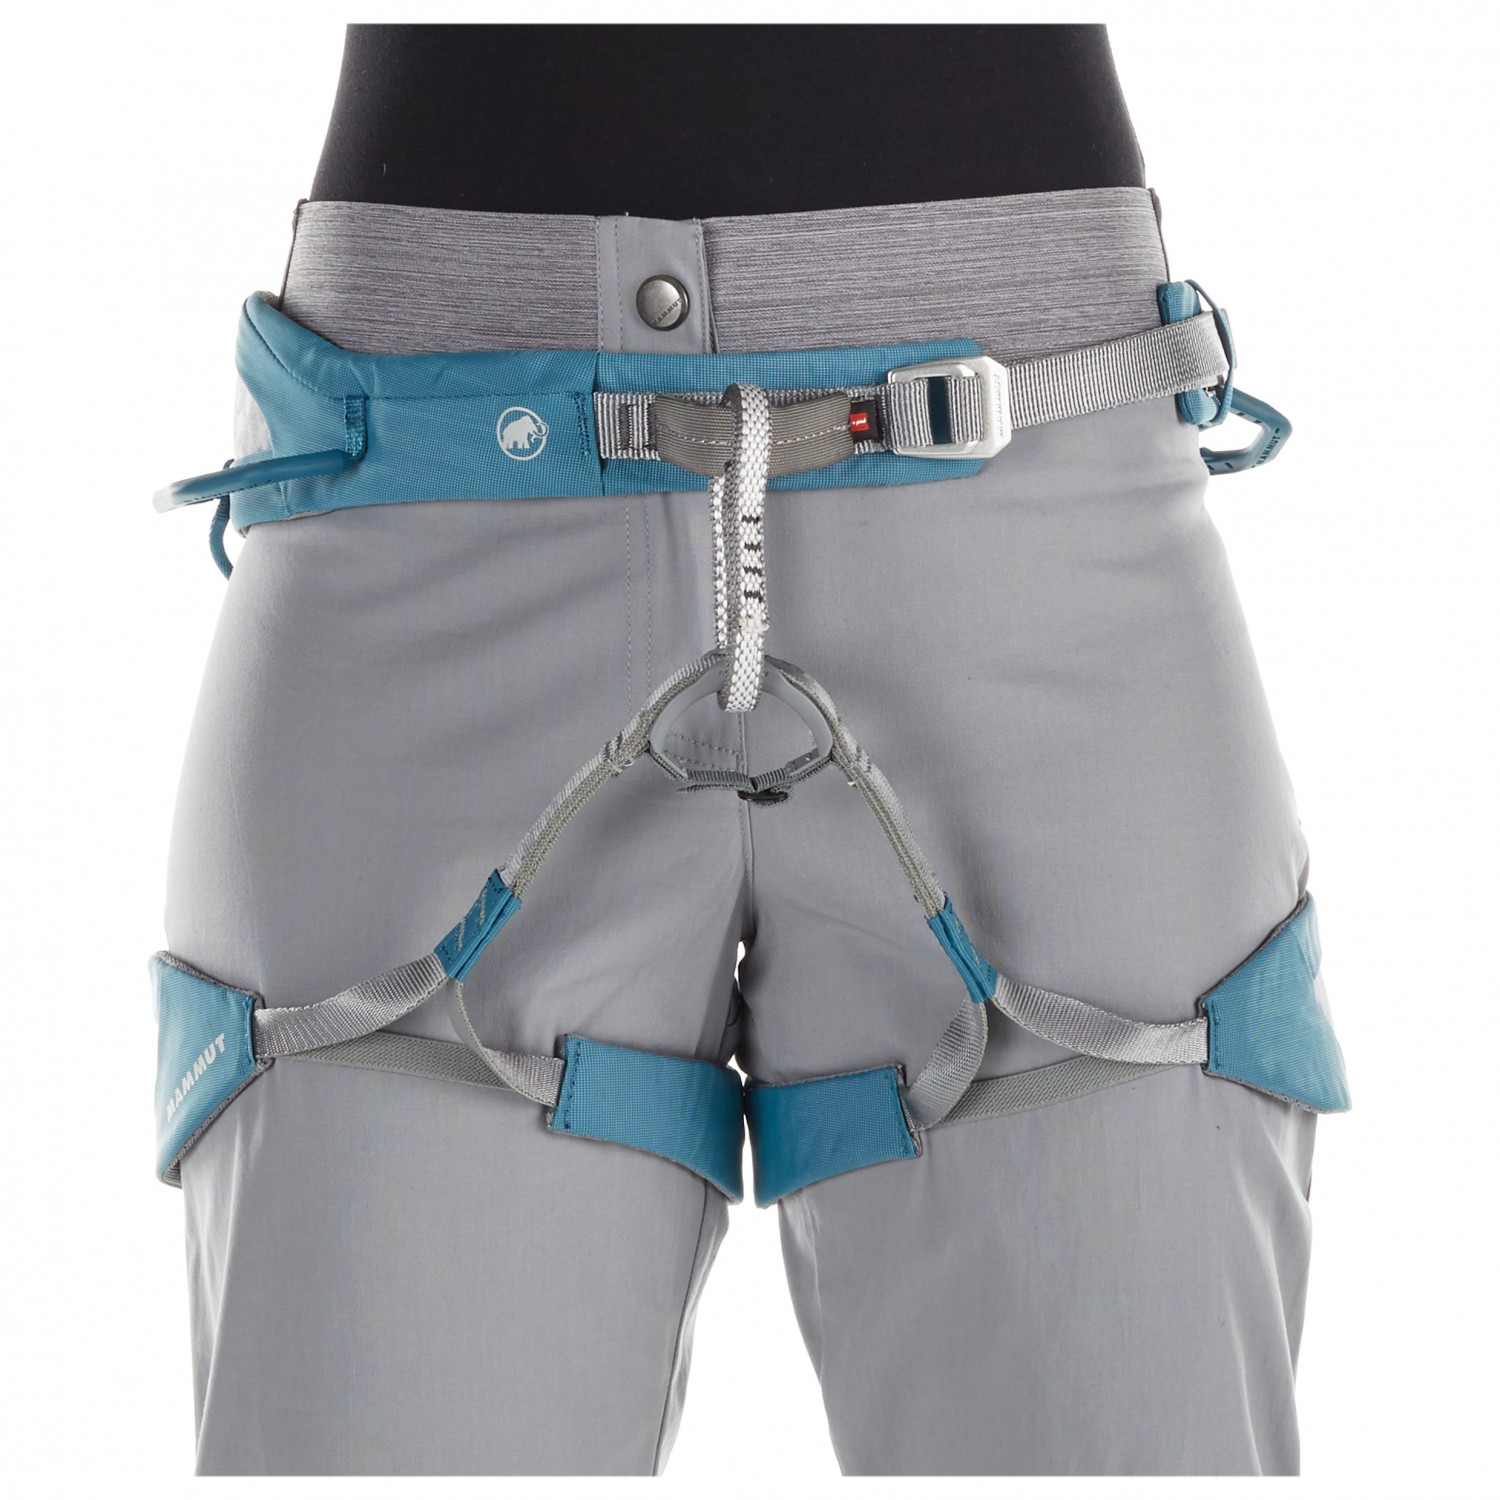 MAMMUT 109-0760 – Alnasca Pants Women – Climbing trousers Size 381